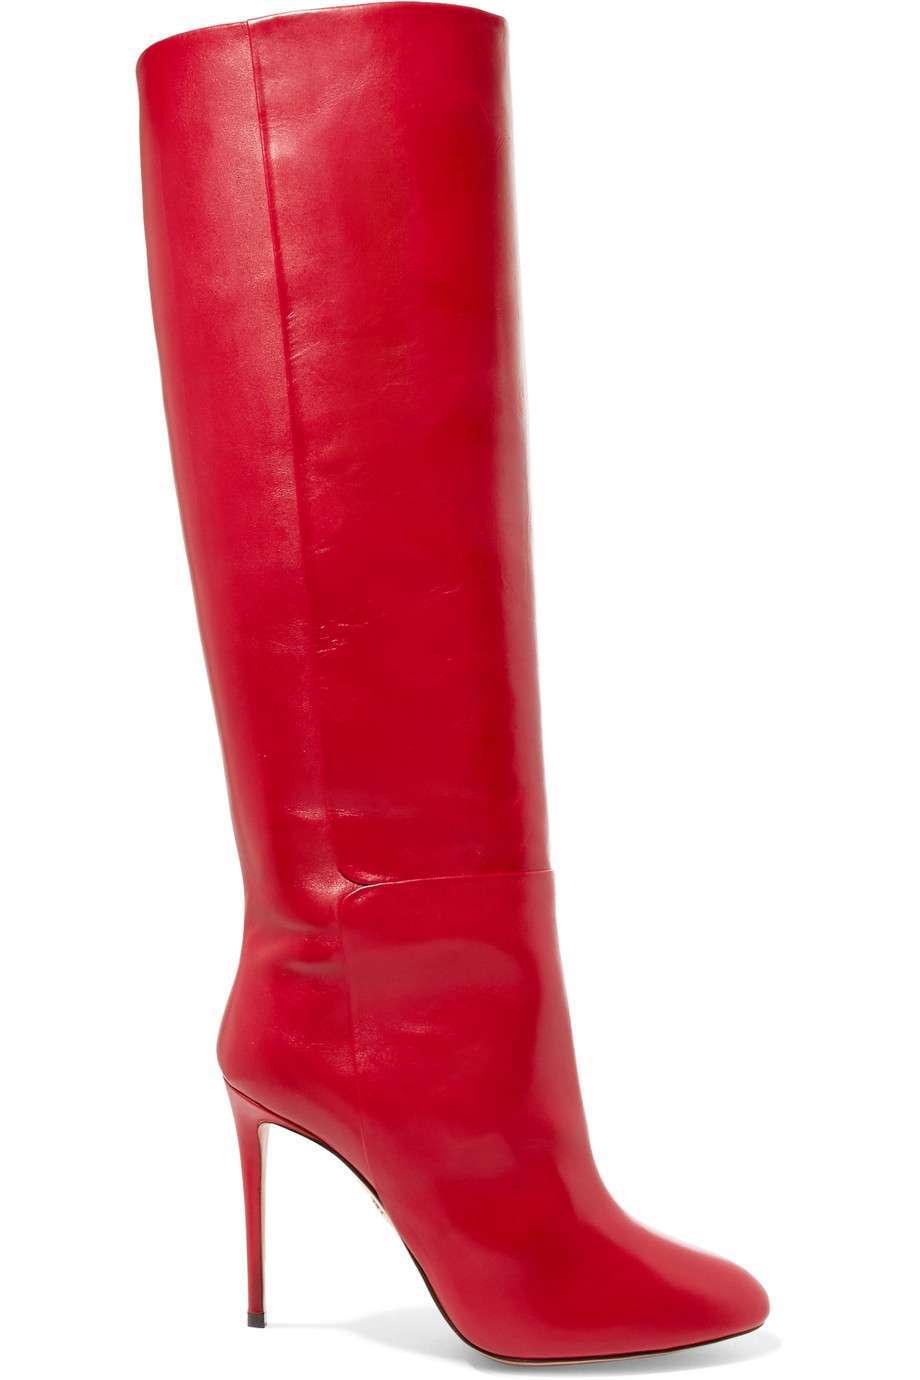 Stivali rossi con tacco Aquazzura